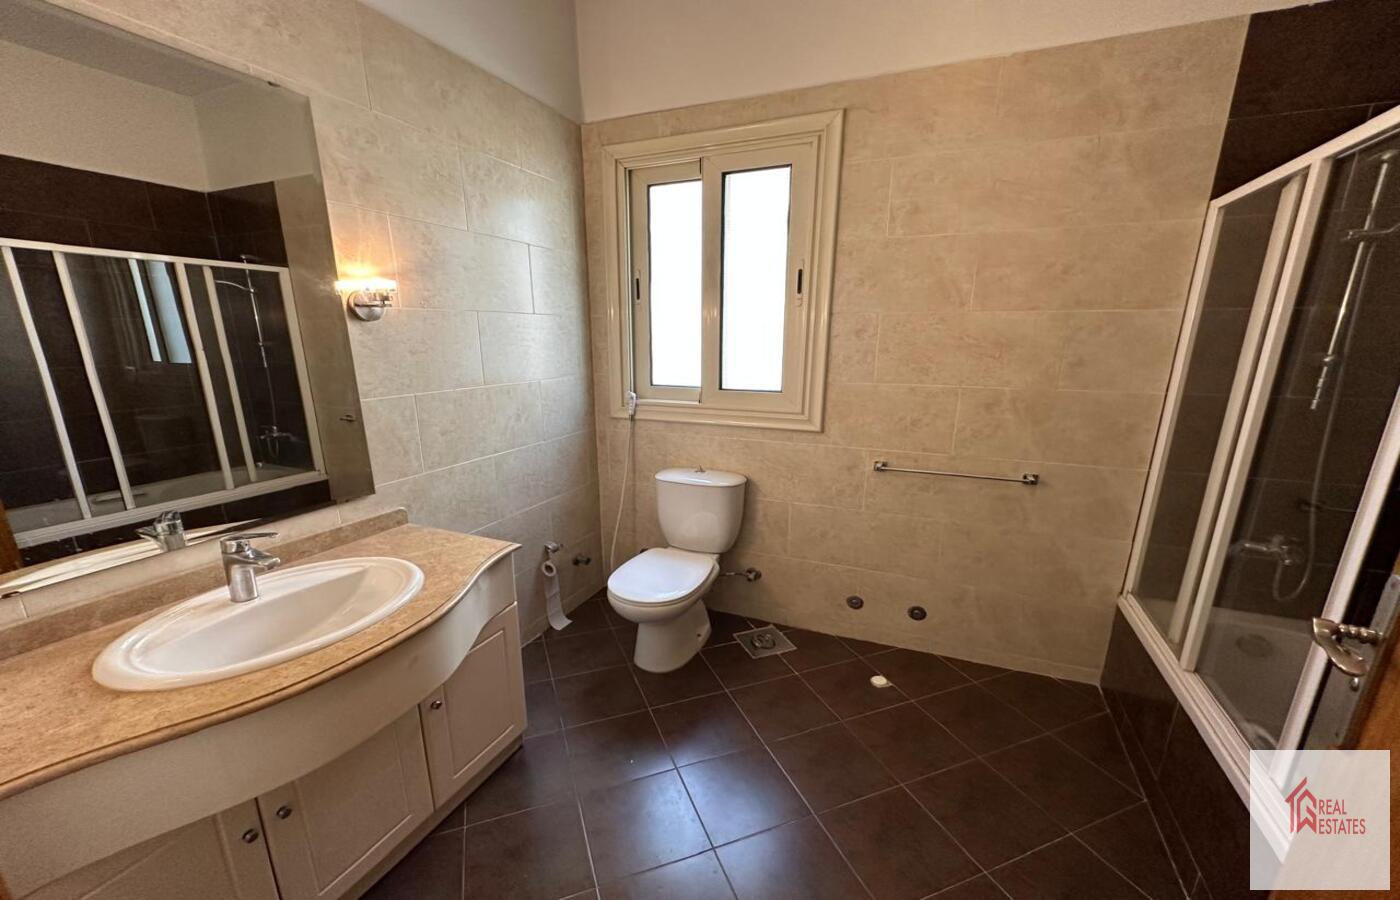 الشقة الثانية الطابق الأول 3 غرف نوم حمامين غرفة غسيل غرفة معيشة كبيرة مع مطبخ مفتوح وحديقة كبيرة مع مسبح. الإيجار 4200 دولار أمريكي